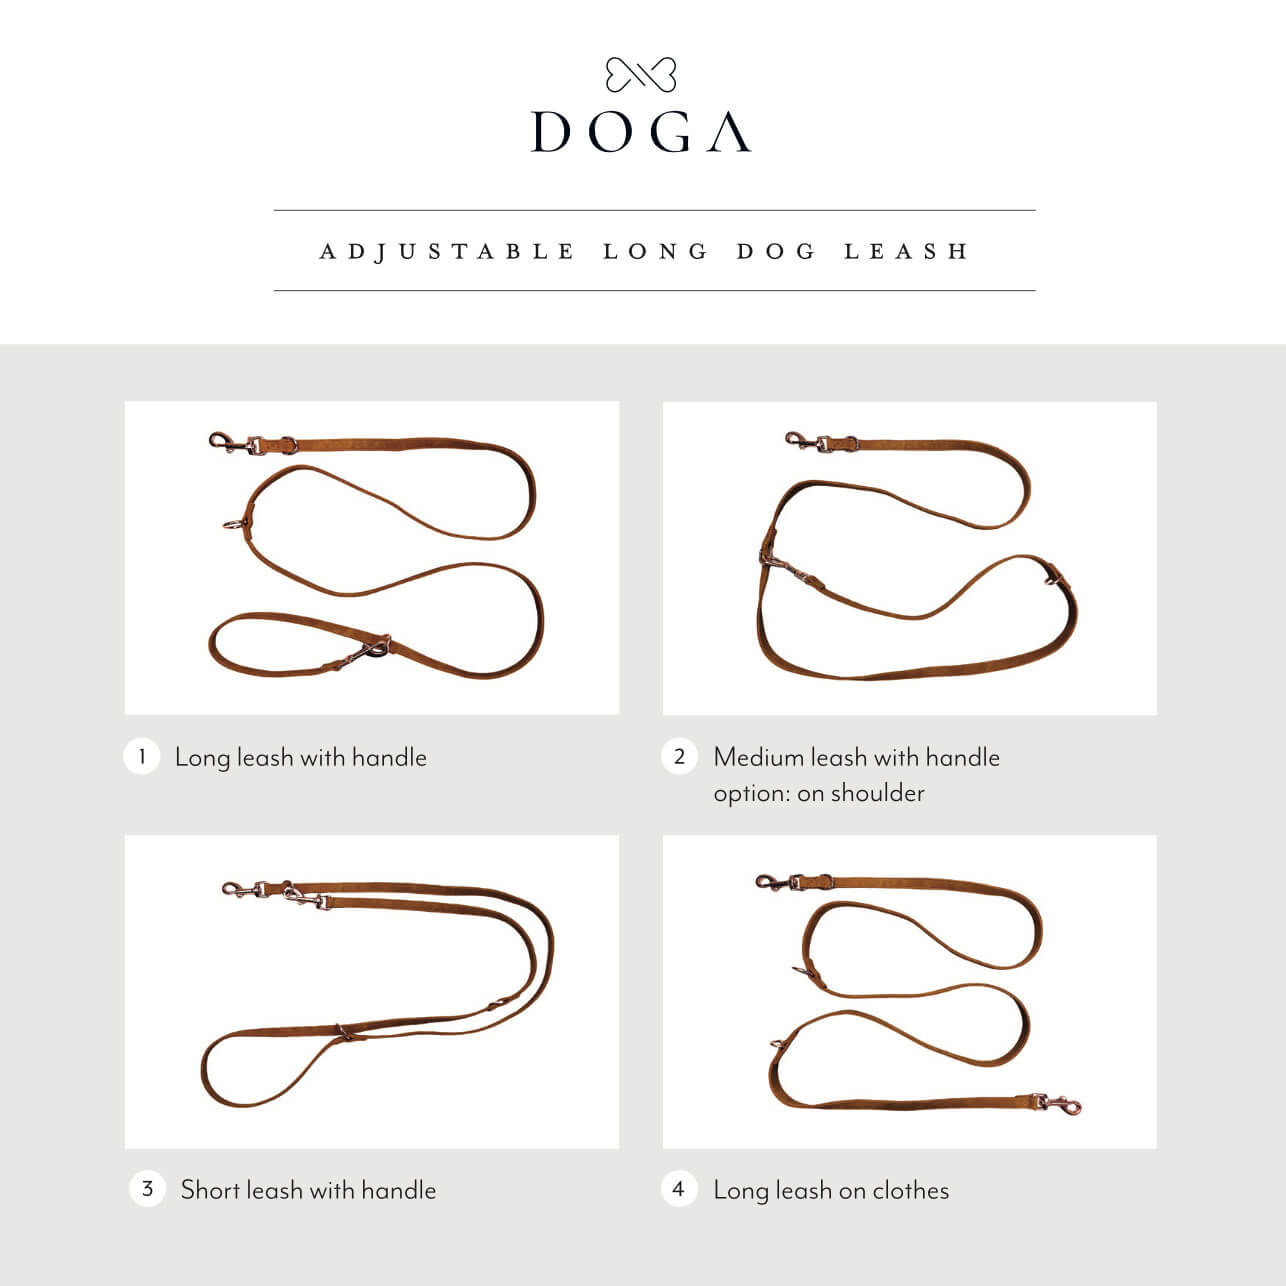 Hondenriem CognacDe hondenriem Cognac van DOGA is een luxe accessoire voor je hond. Gemaakt van hoogwaardig vegan suède leer, heeft deze riem een ​​trendy leerlook. De cognac kleur eDogawafwafHondenriem Cognac